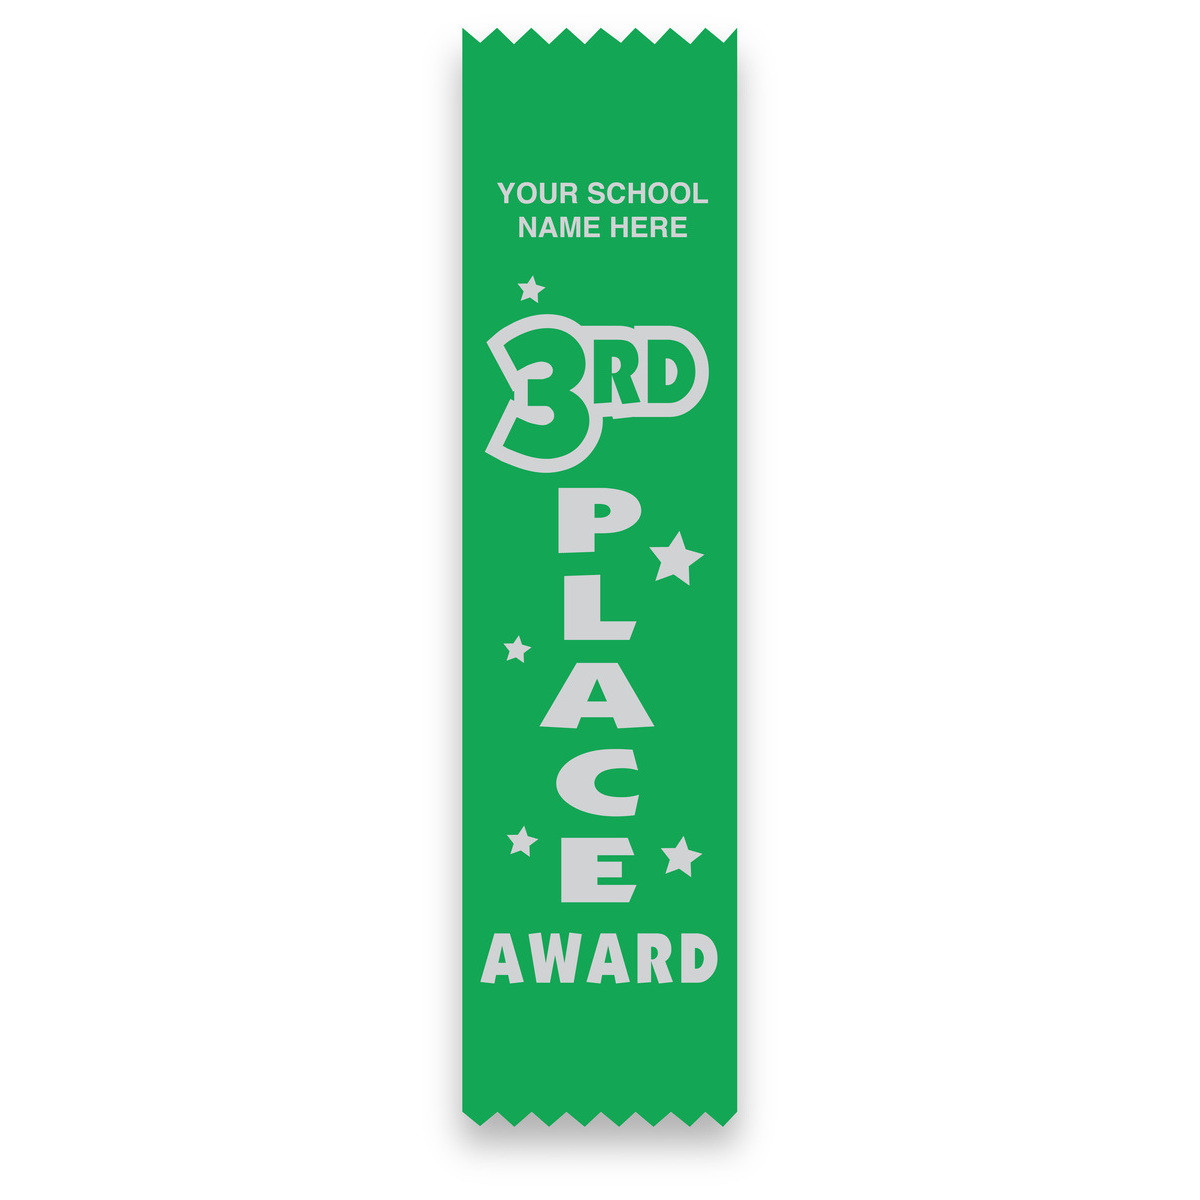 Imprinted Flat Ribbon - 3rd Place Award